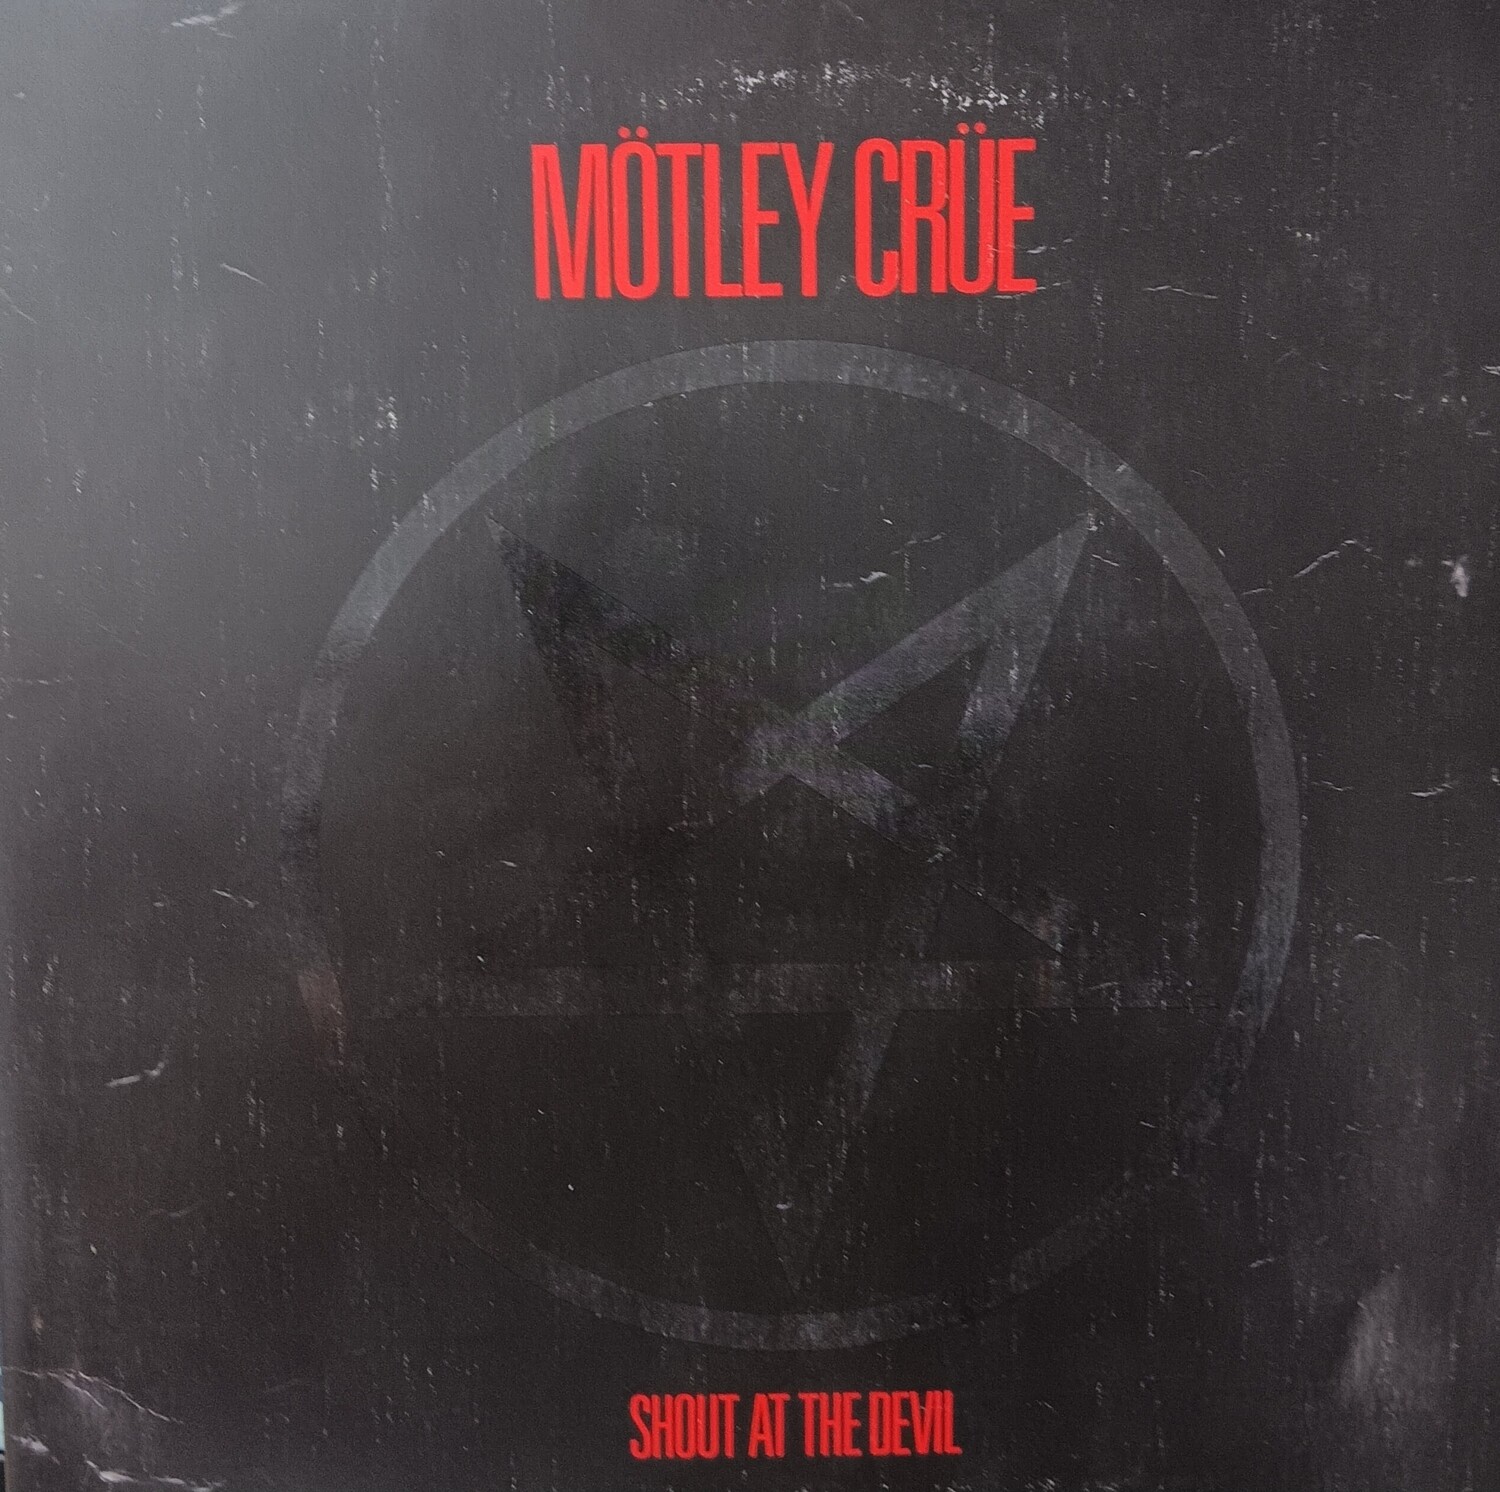 Motley Crue - Shout at the devil (2022)